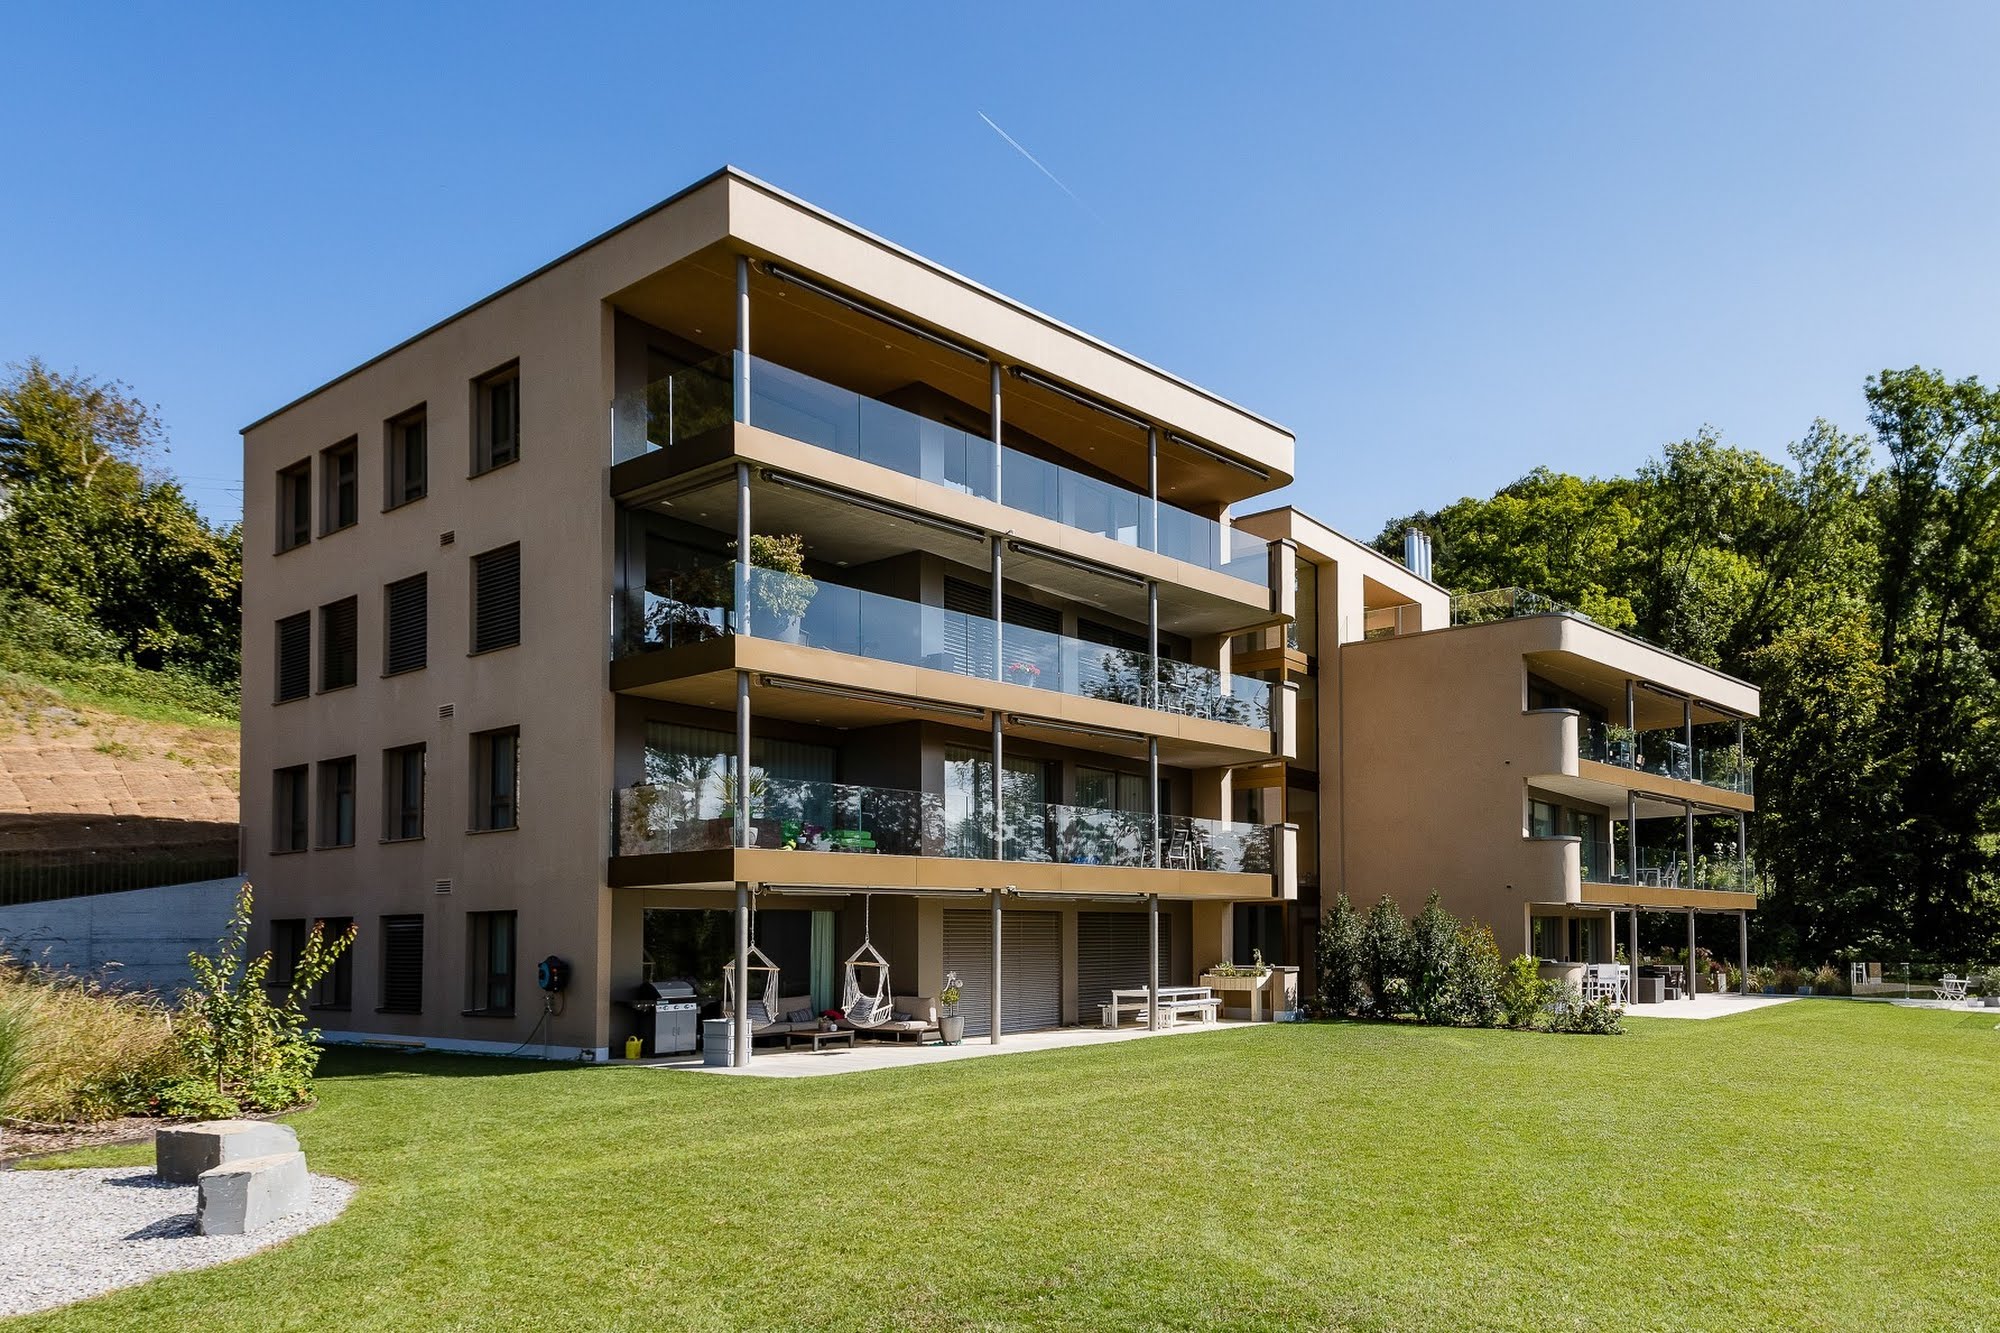 Wohnen MFH MFH Kirschgarten in Schenkon (BB4) Architektur,Wohnungsbau,Wohnhäuser,Einfamilienhäuser,Mehrfamilienhäuser